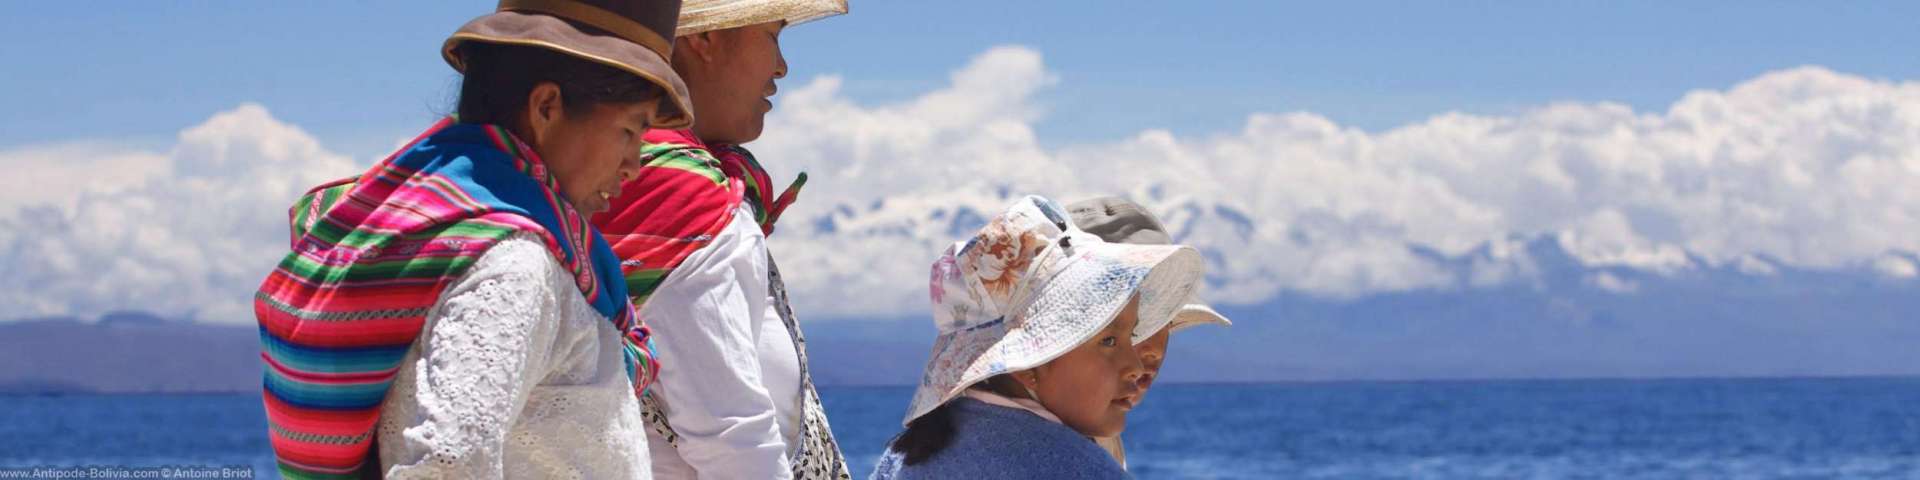 Pueblos y culturas de Bolivia